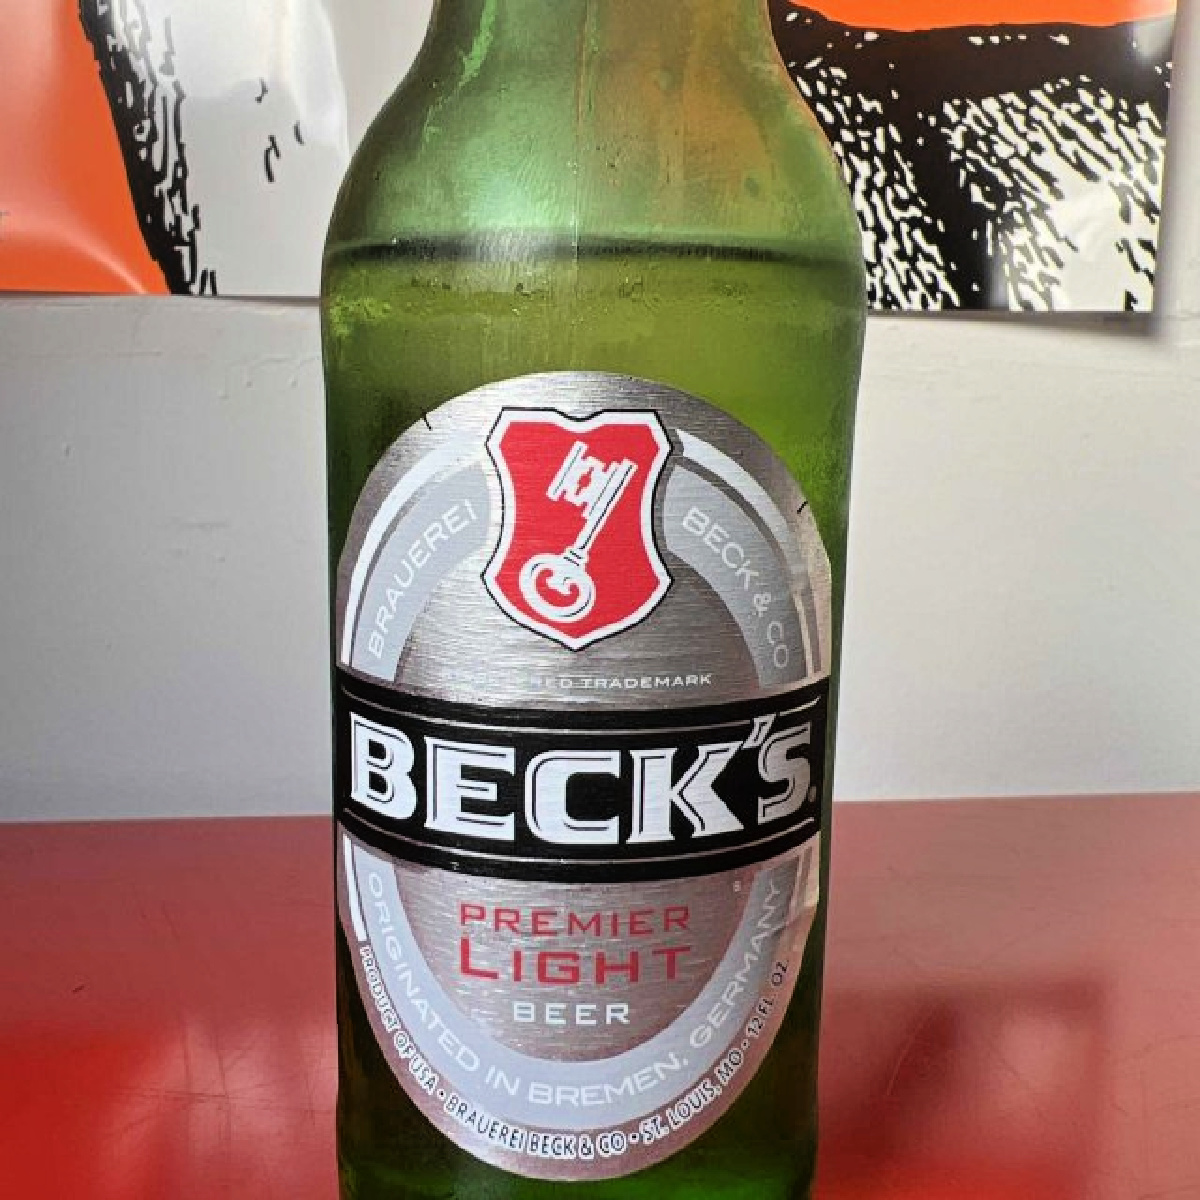 A bottle of lower carb Beck's Premier Light Beer